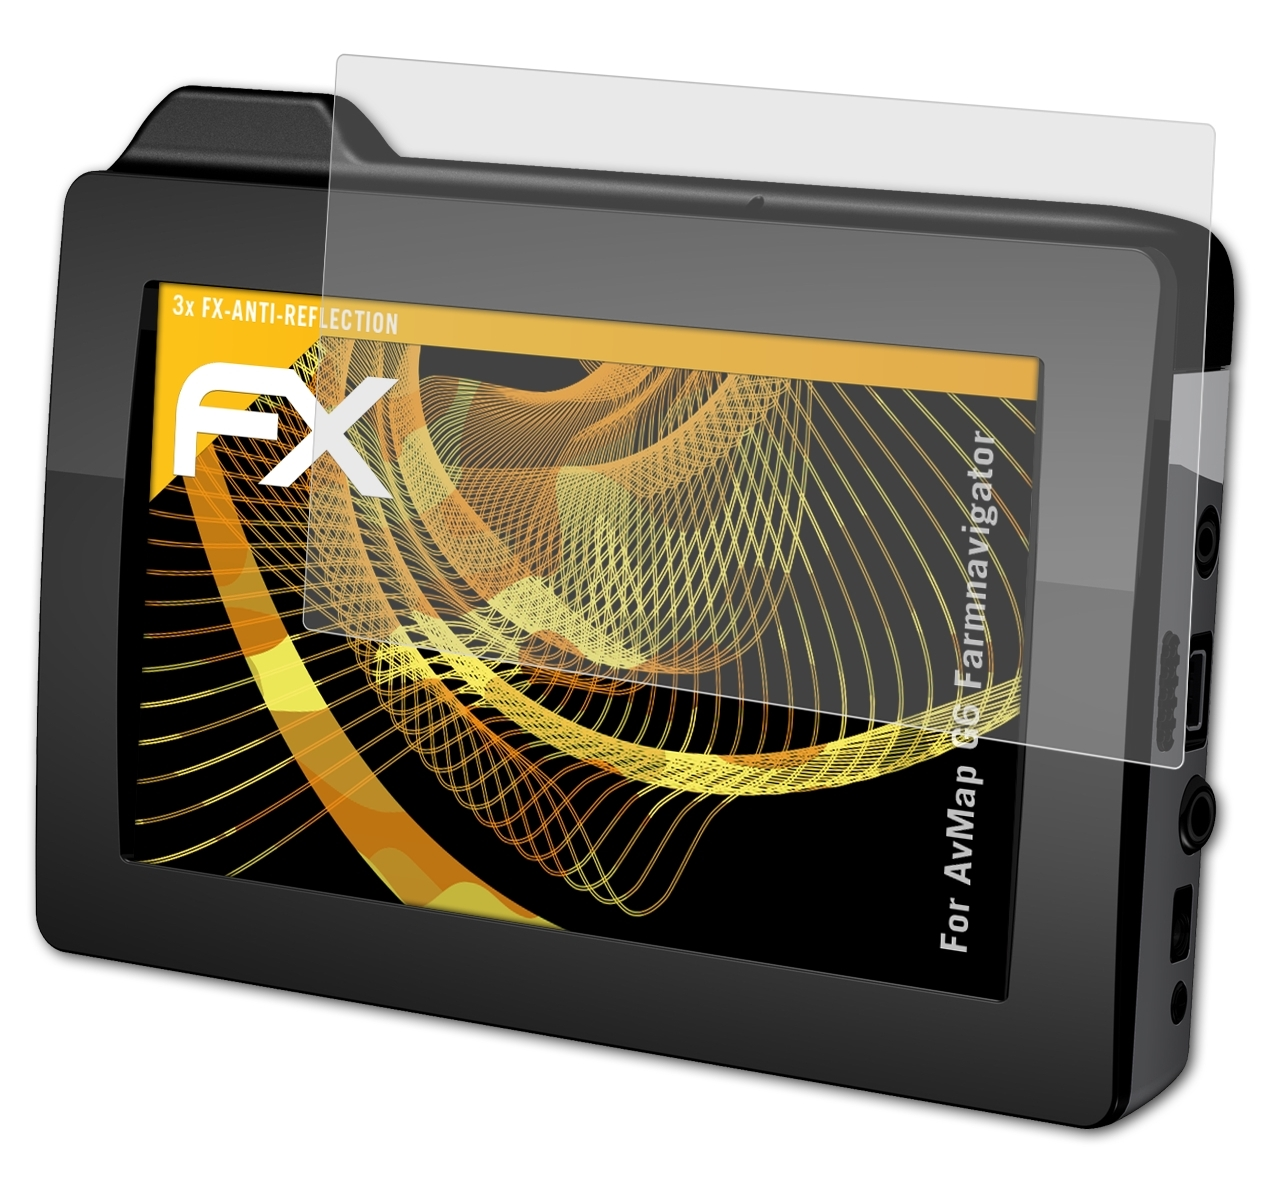 AvMap Displayschutz(für Farmnavigator) 3x FX-Antireflex G6 ATFOLIX